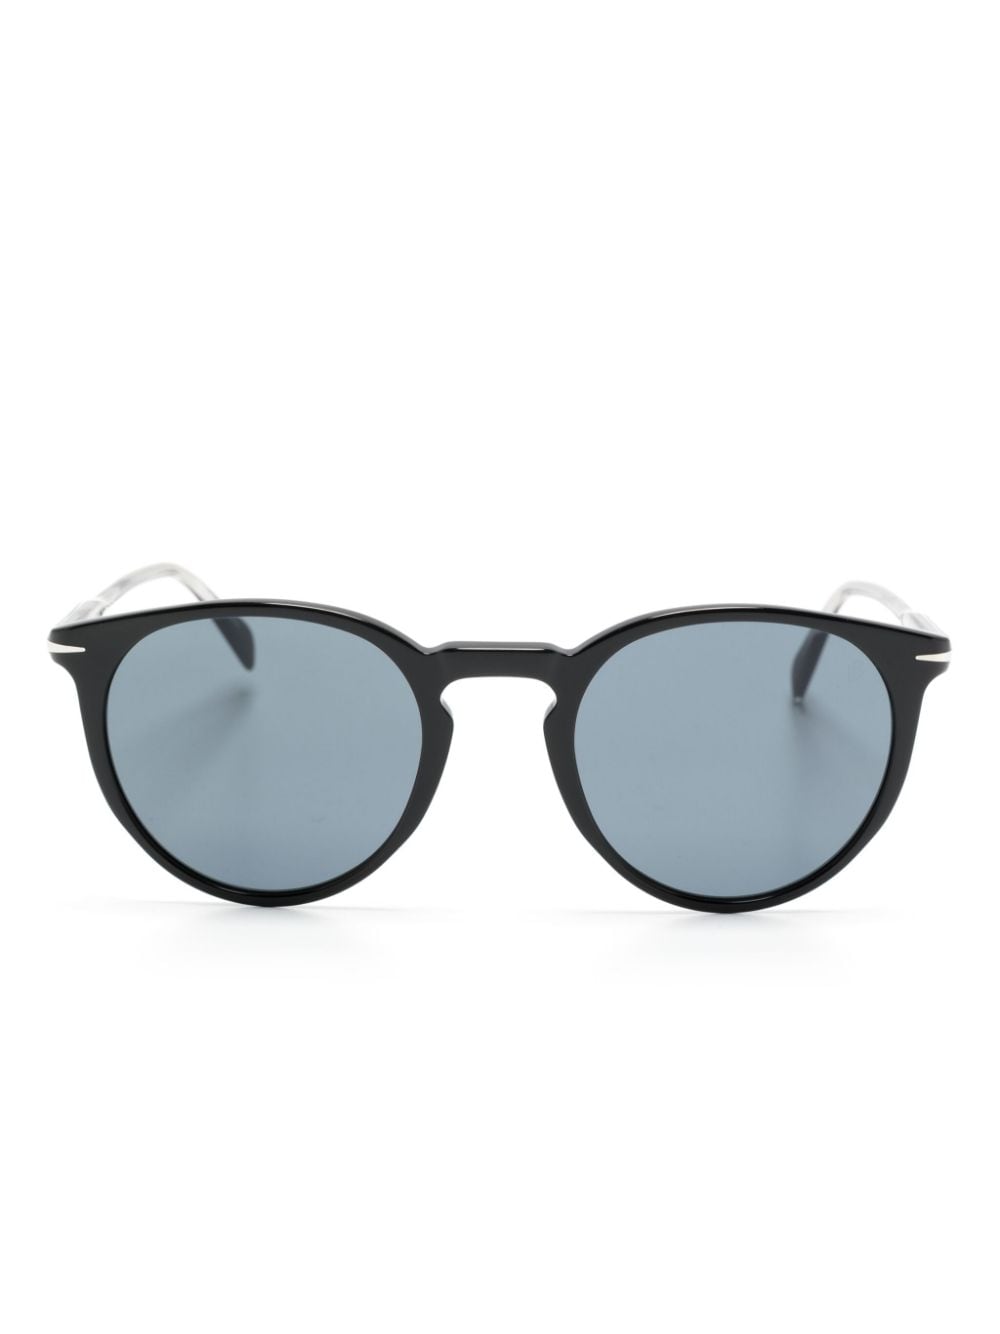 Eyewear by David Beckham pantos-frame sunglasses - Black von Eyewear by David Beckham